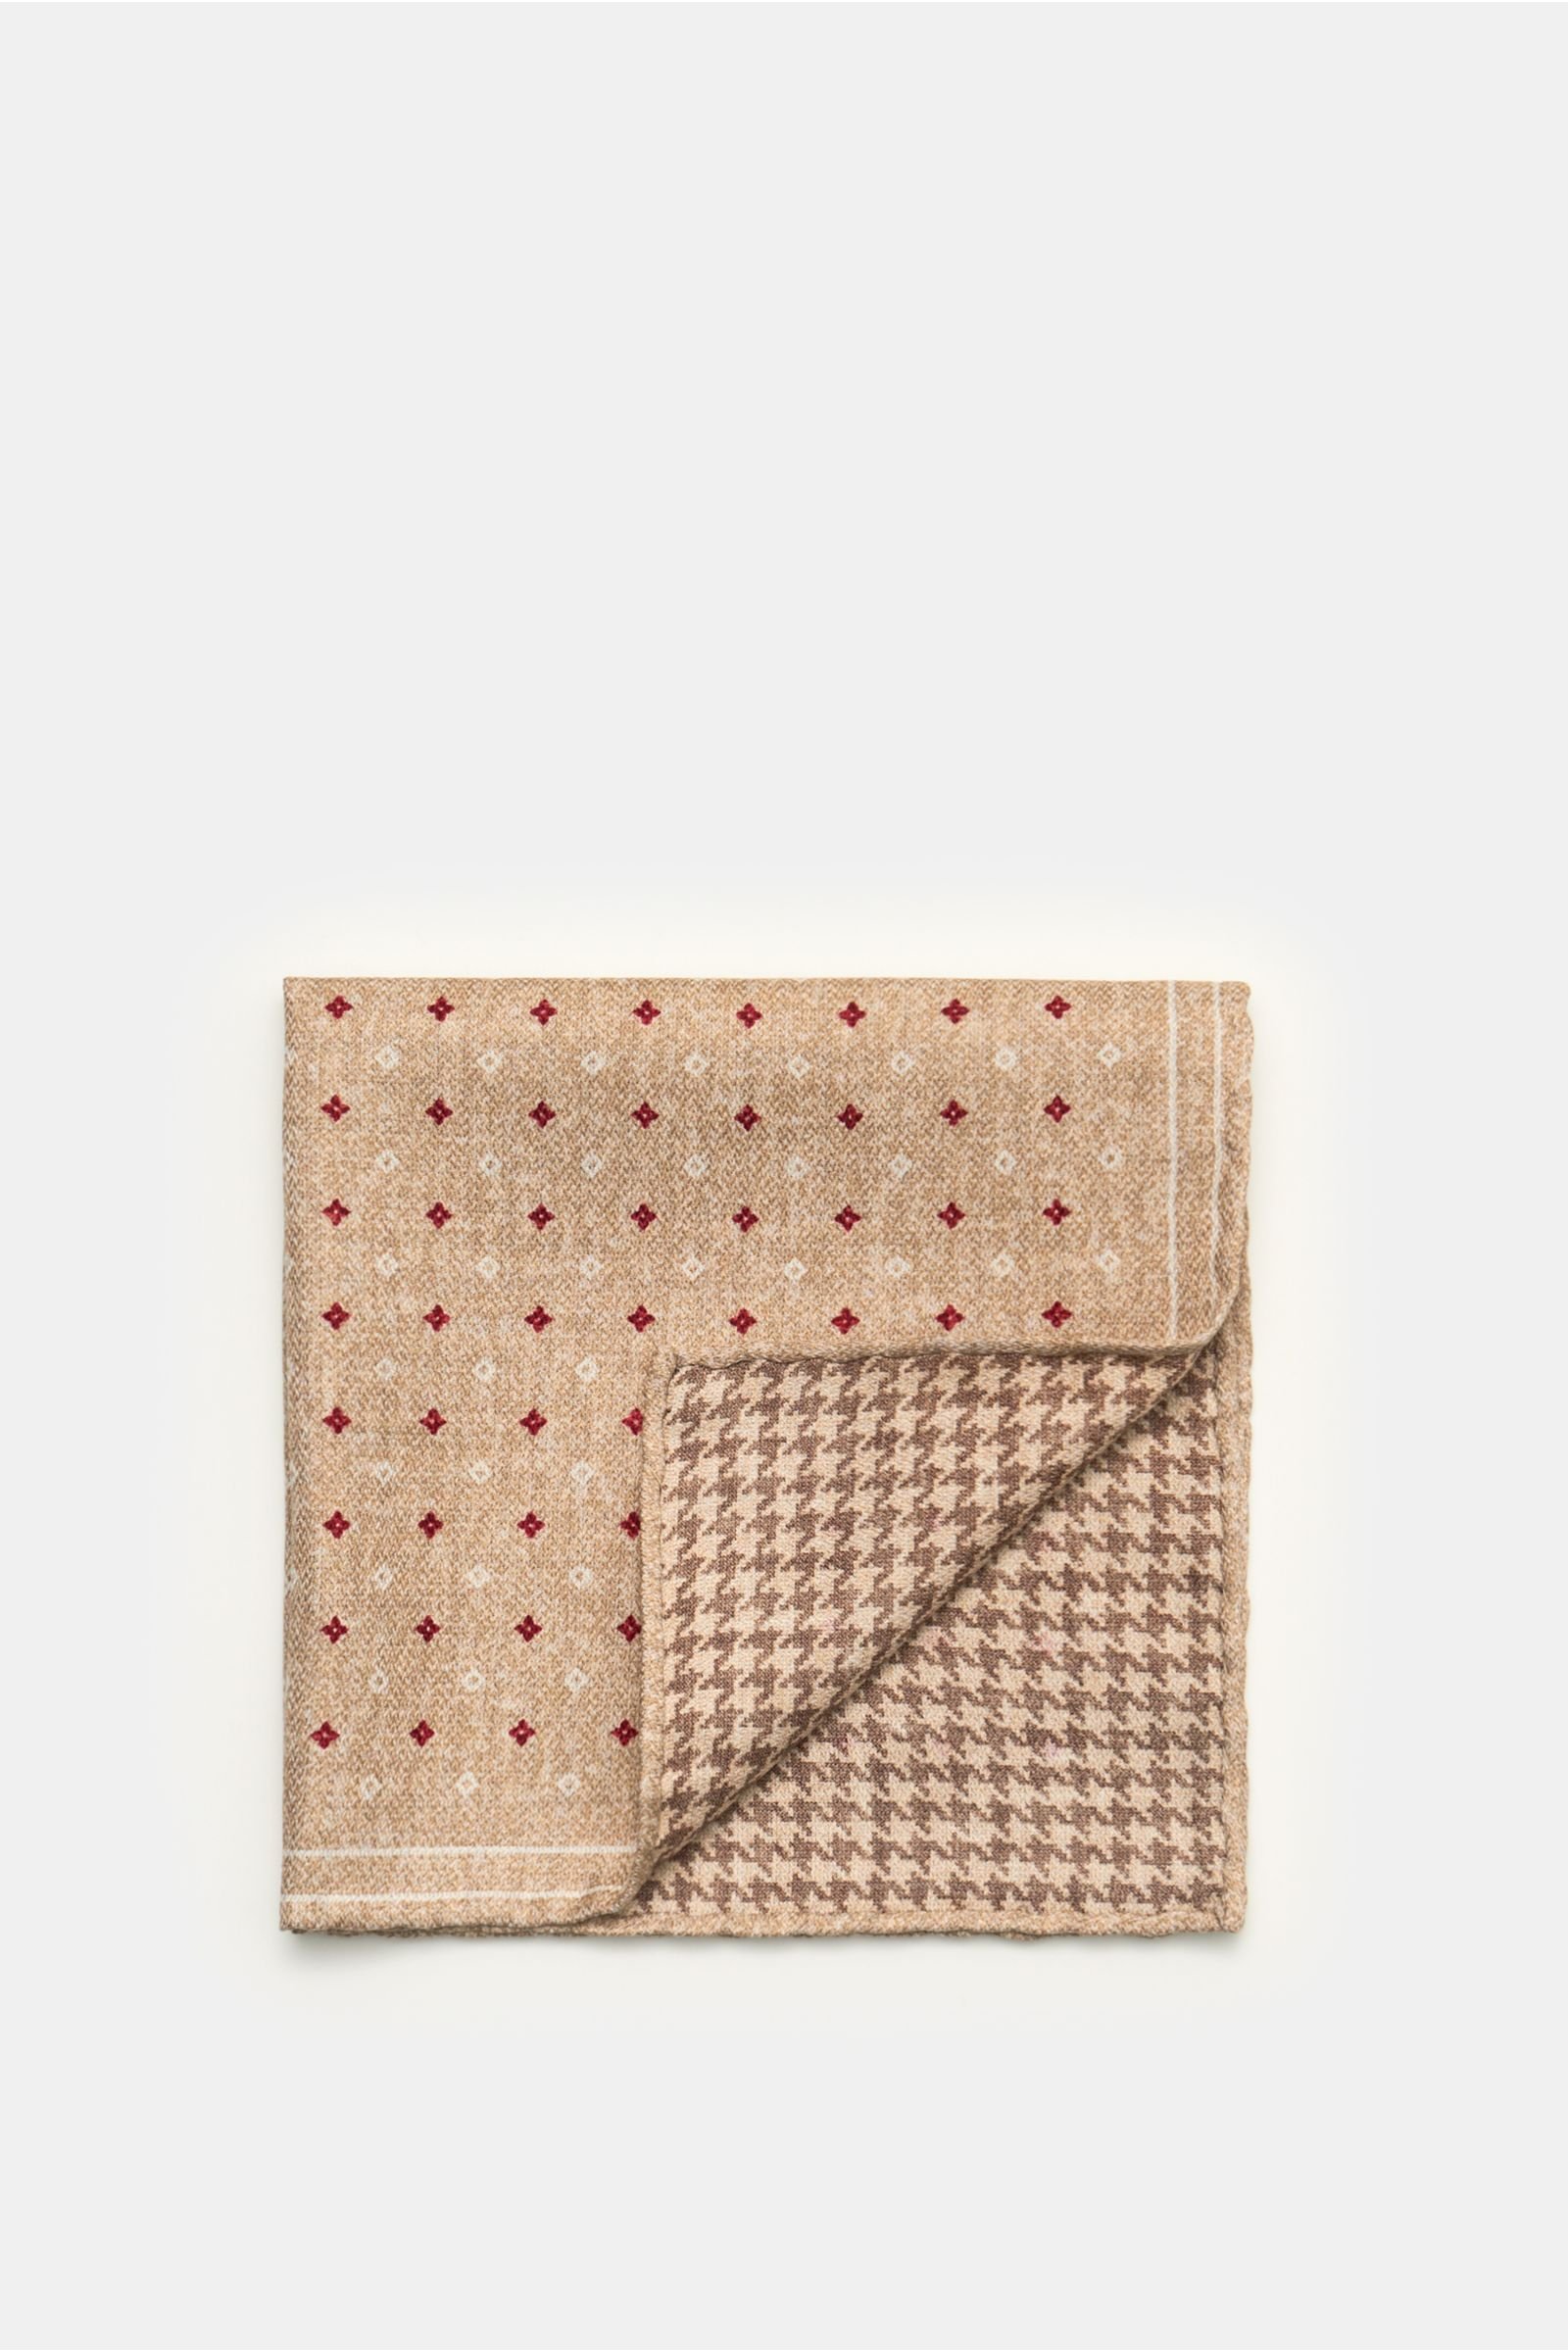 Pocket square beige/red patterned